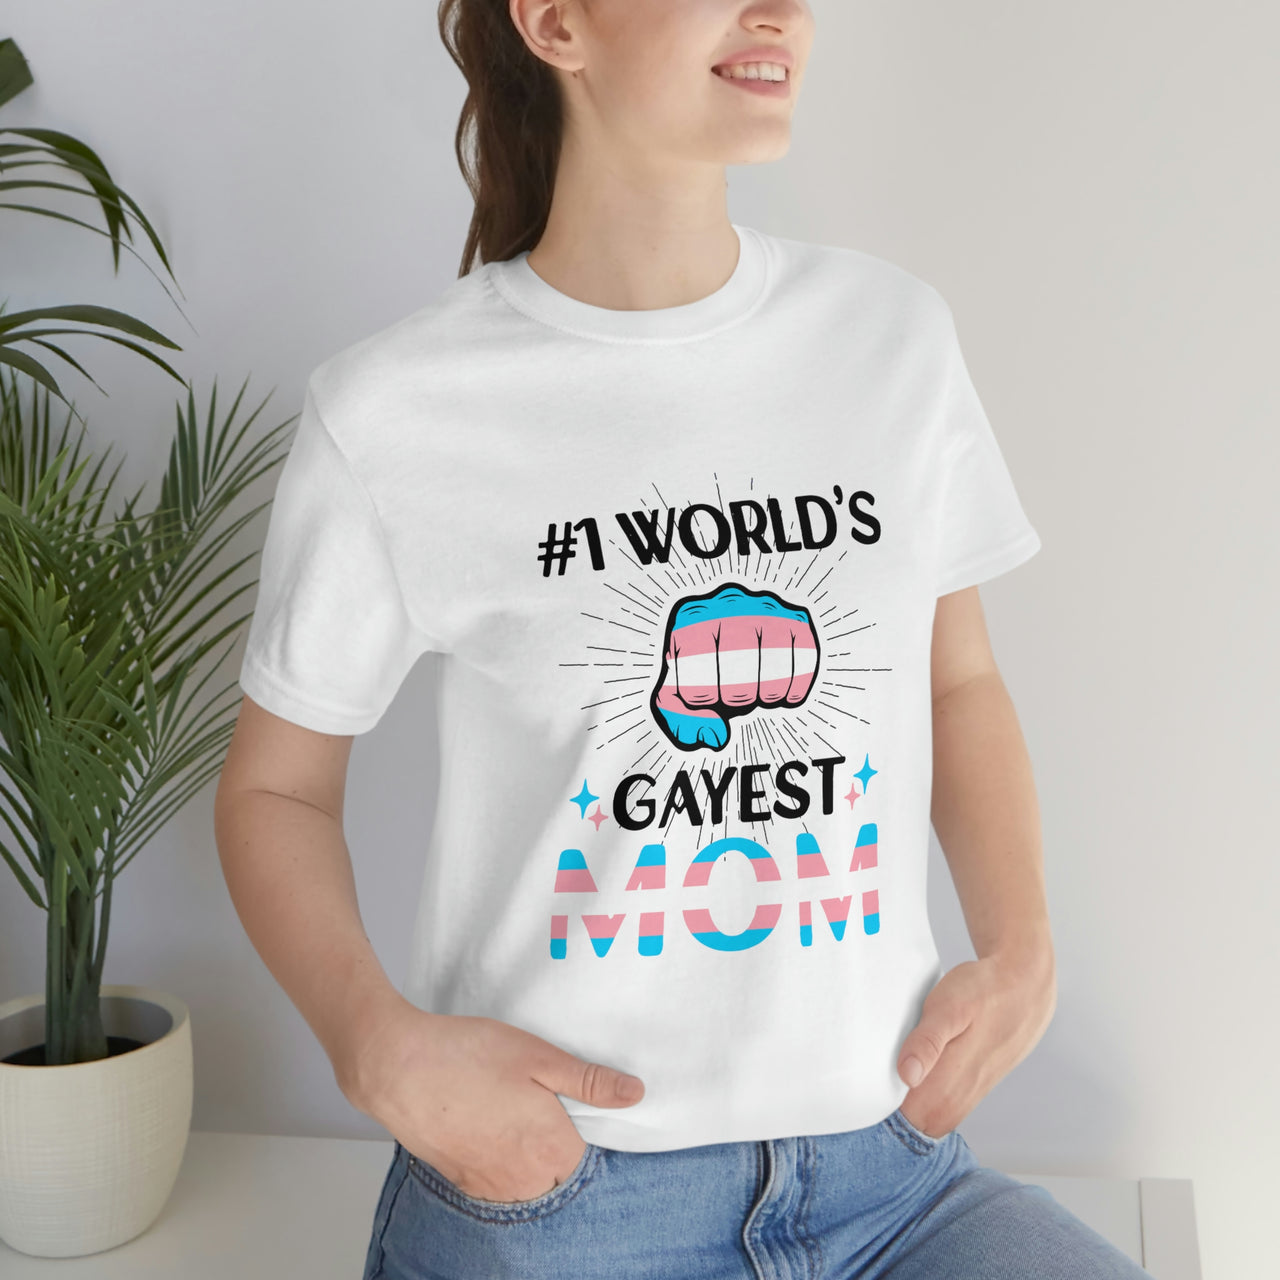 Transgender Pride Flag Mother's Day Unisex Short Sleeve Tee - #1 World's Gayest Mom SHAVA CO